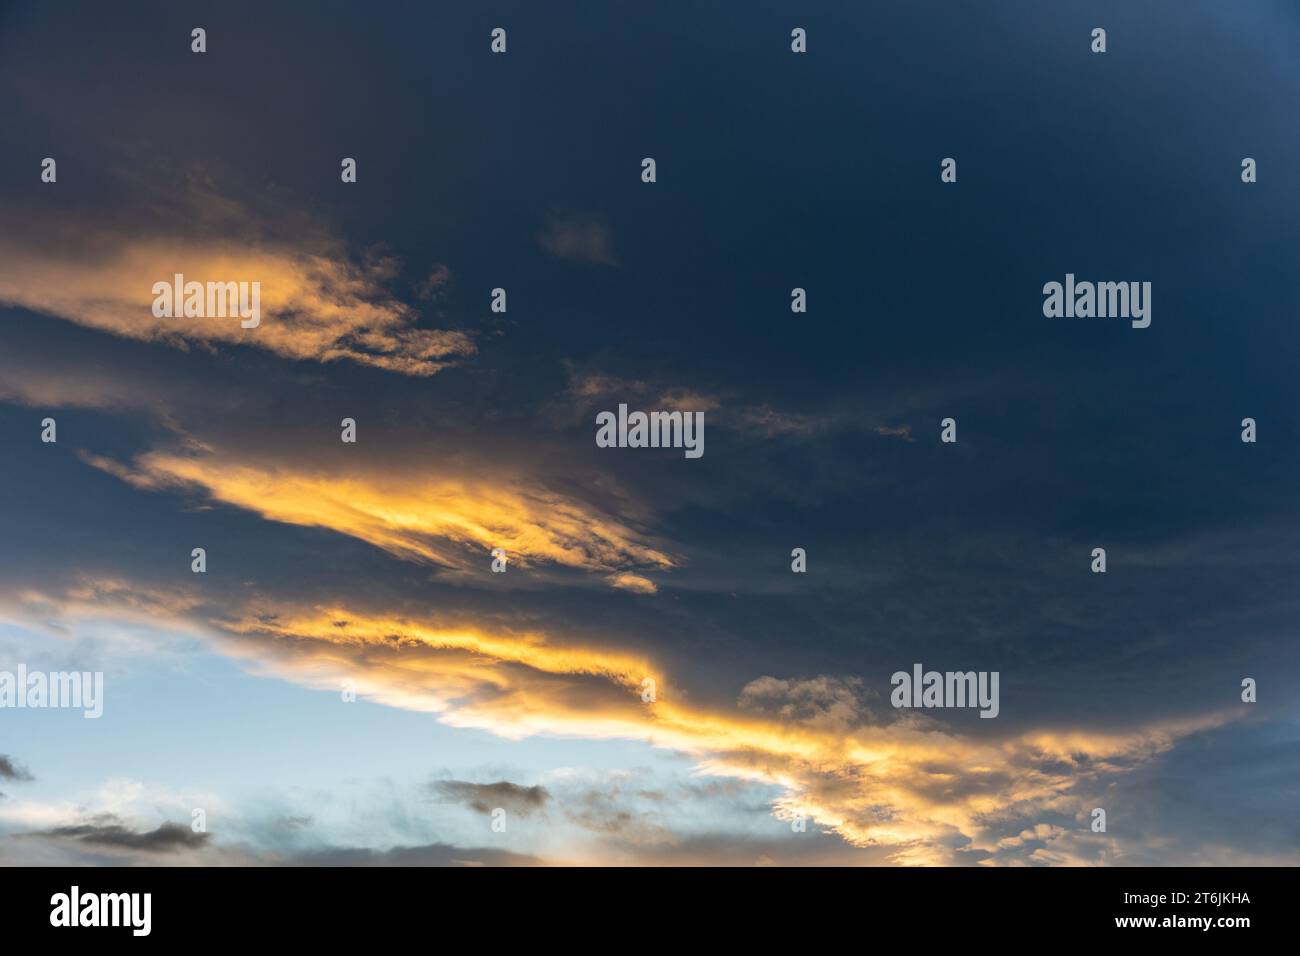 Las diferentes nubes otoñales con sus formas, colores, texturas son dignas de admirar Foto de stock